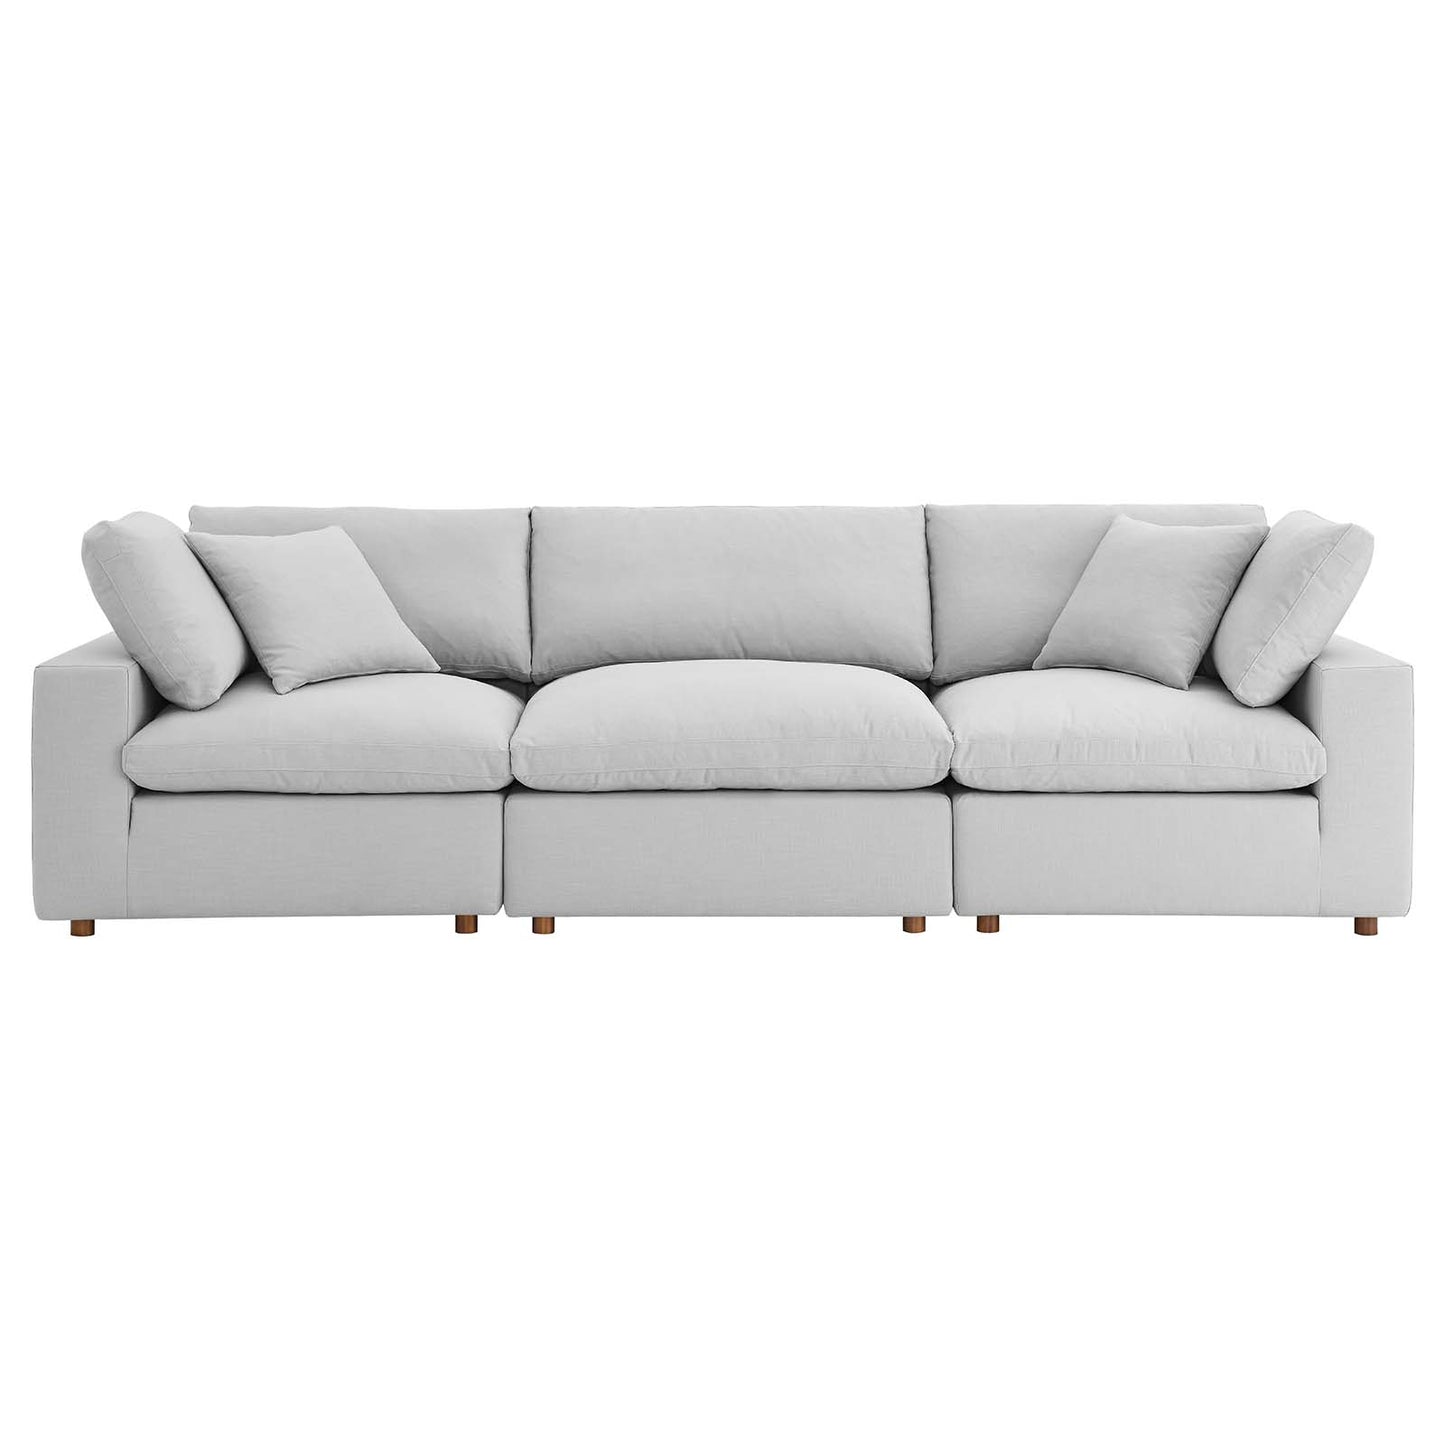 Commix Down Filled Overstuffed 3 Piece Sectional Sofa Set Light Gray EEI-3355-LGR